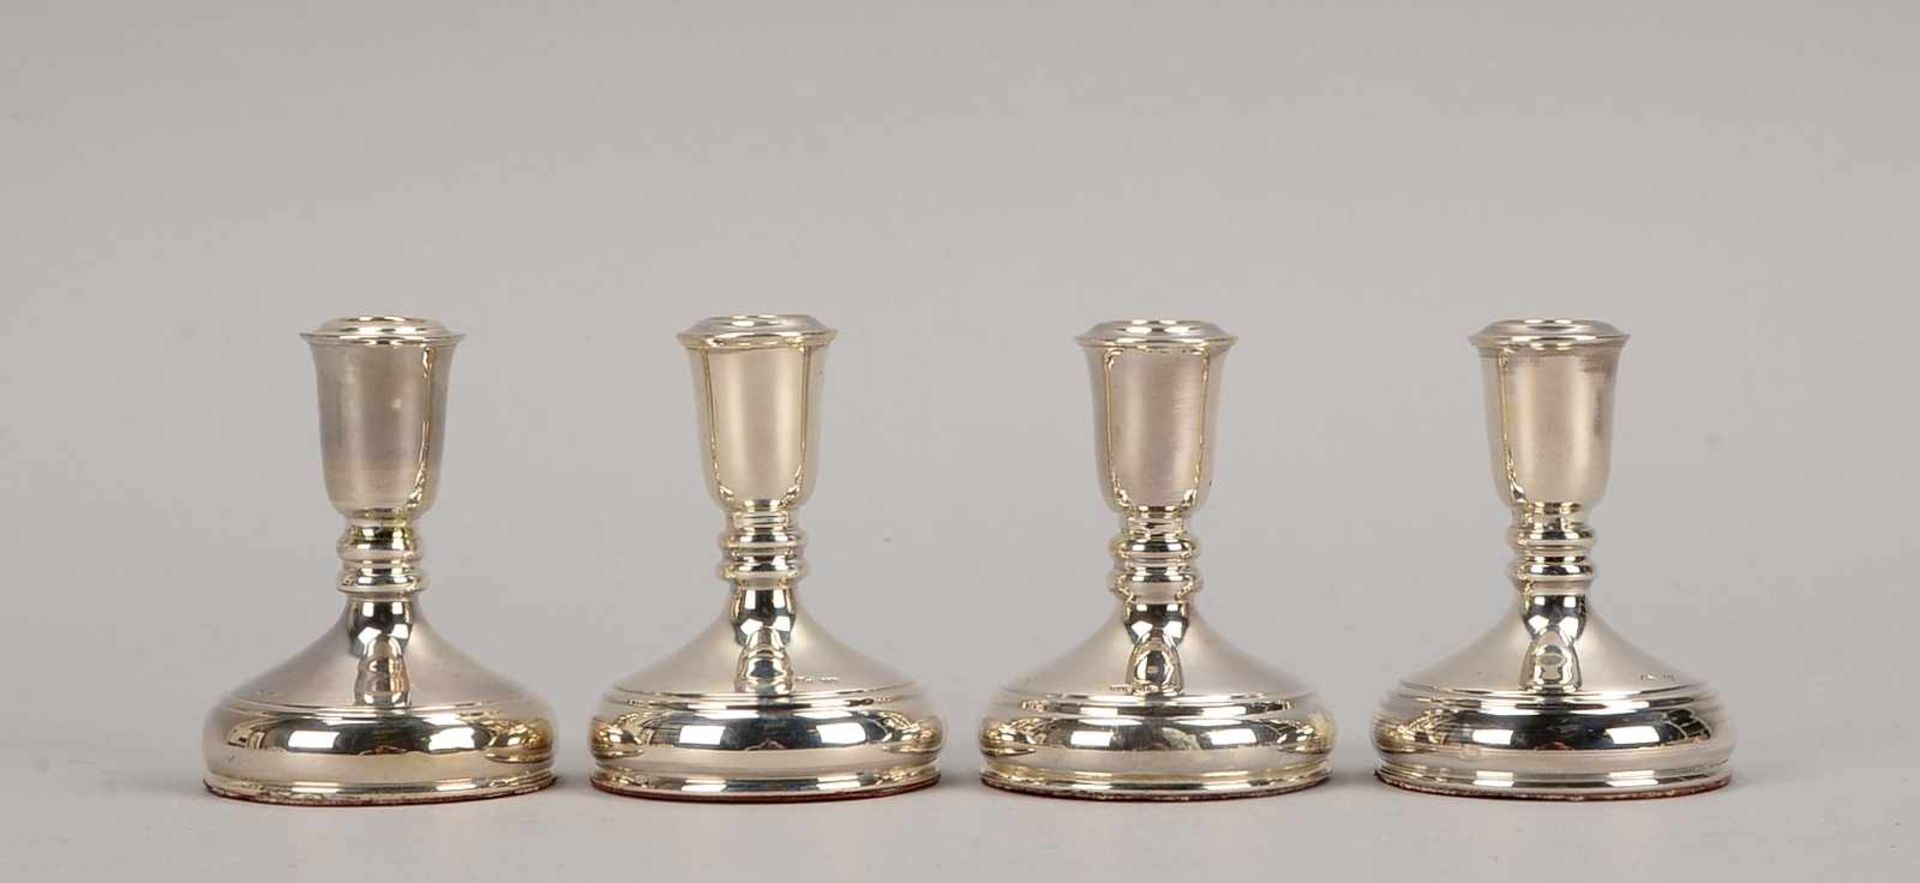 Satz kleiner Kerzenleuchter, 4 Stück, 925 Sterling-Silber (gefüllt), Boden mit Filz überzogen;